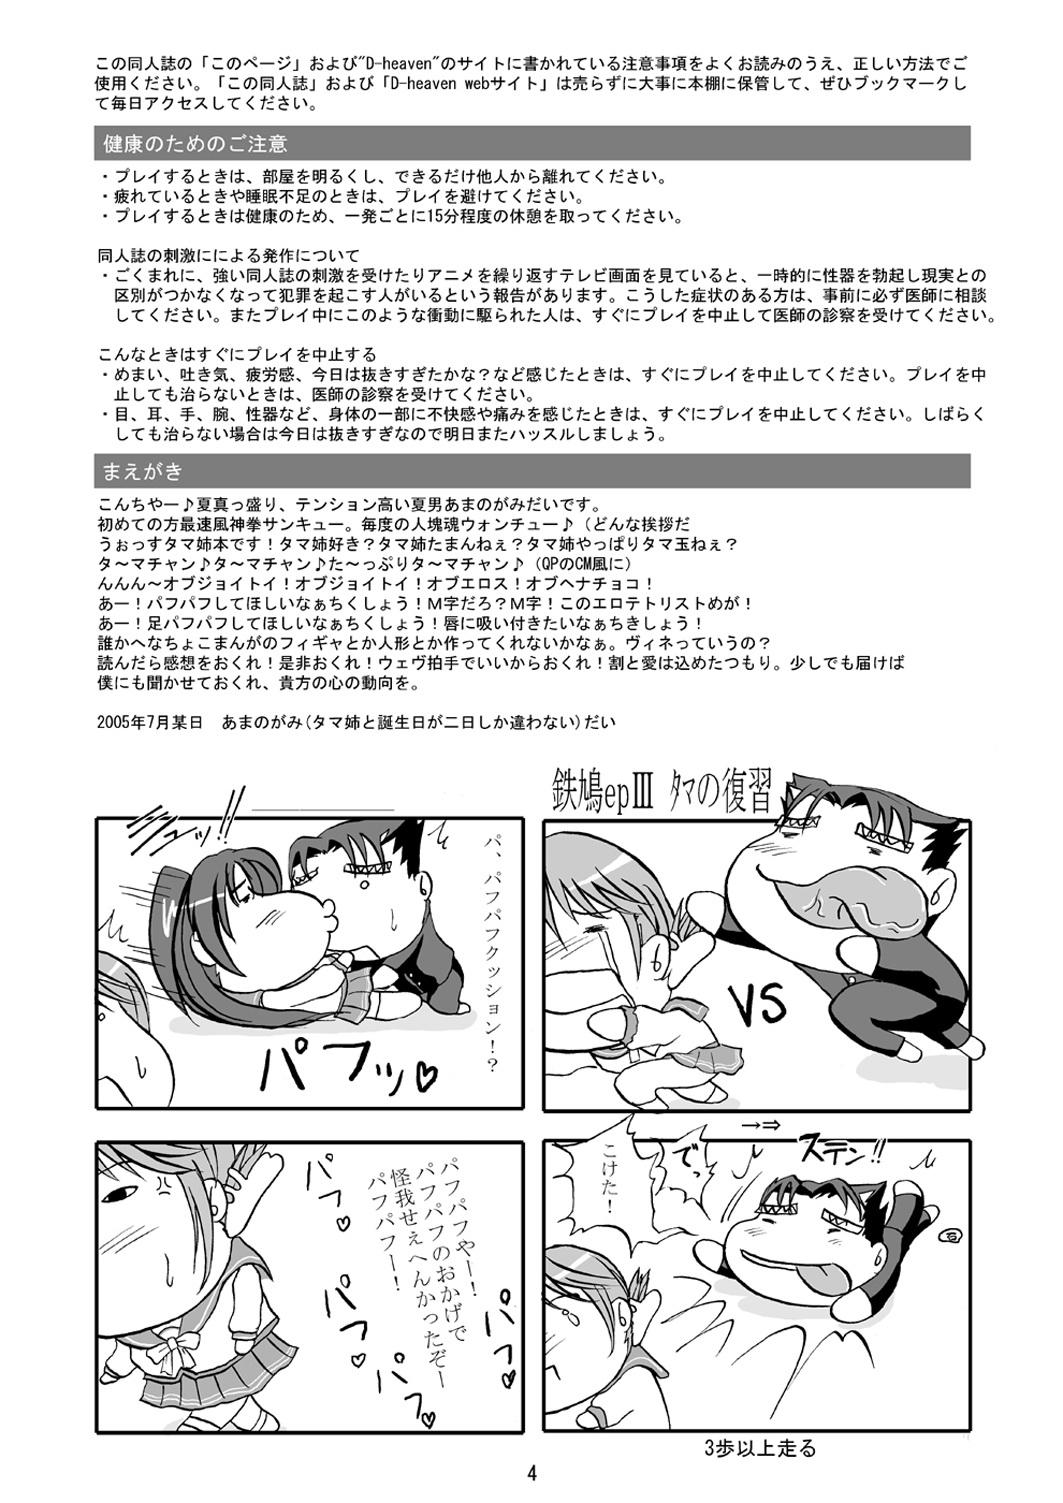 Hunks DoHearts 3 Tama-chan of Joytoy - Toheart2 Banho - Page 4